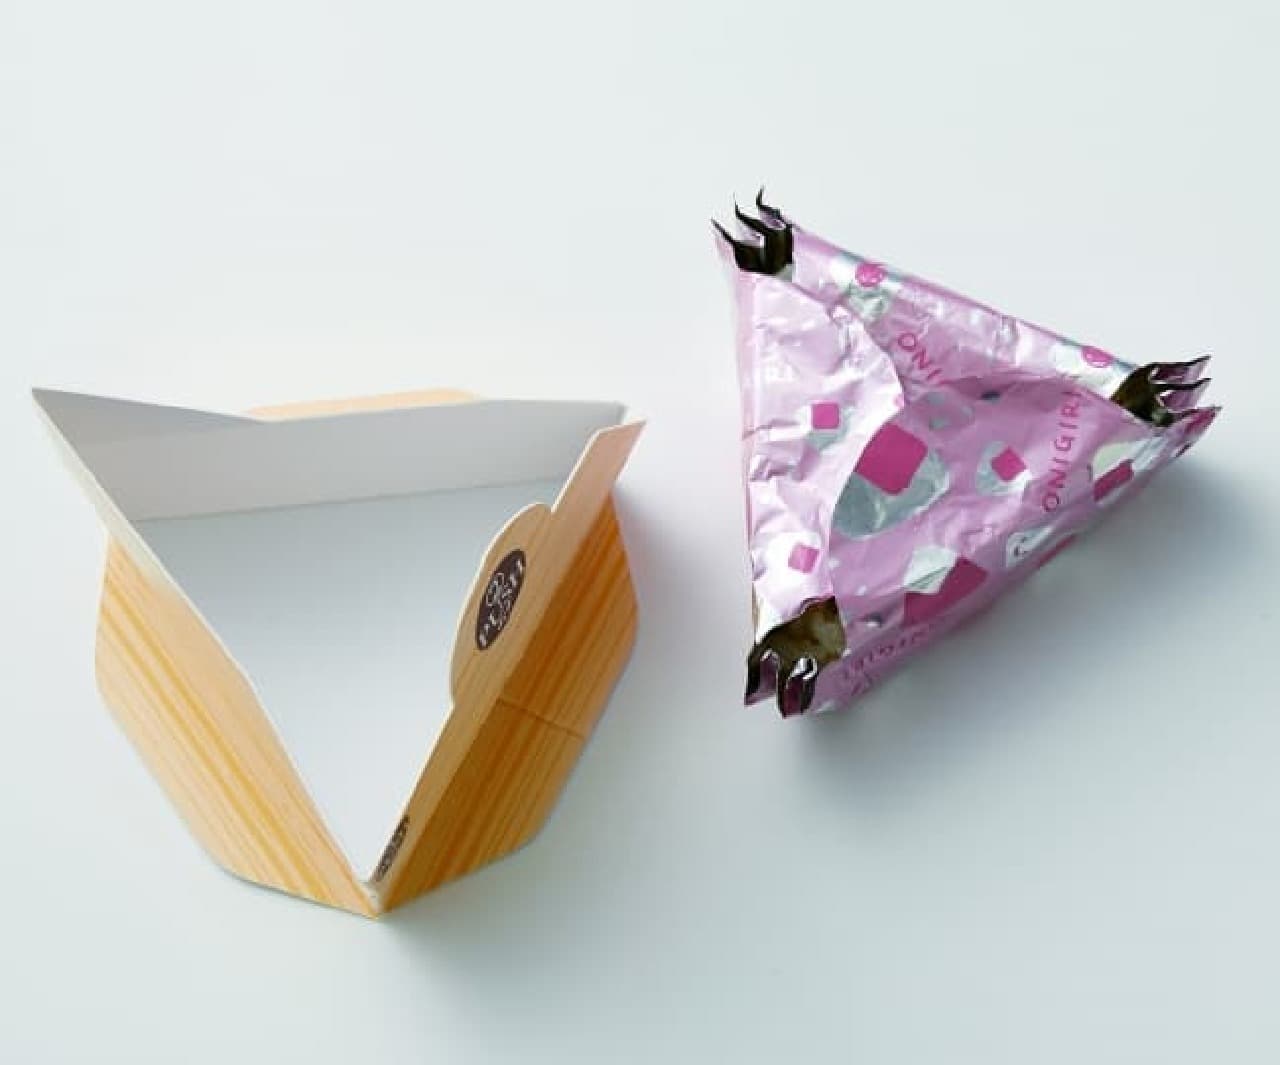 三角おにぎりが簡単にできる「おにぎらないホイル」 -- 紙枠を使って成型と包装を一度に [えんウチ]